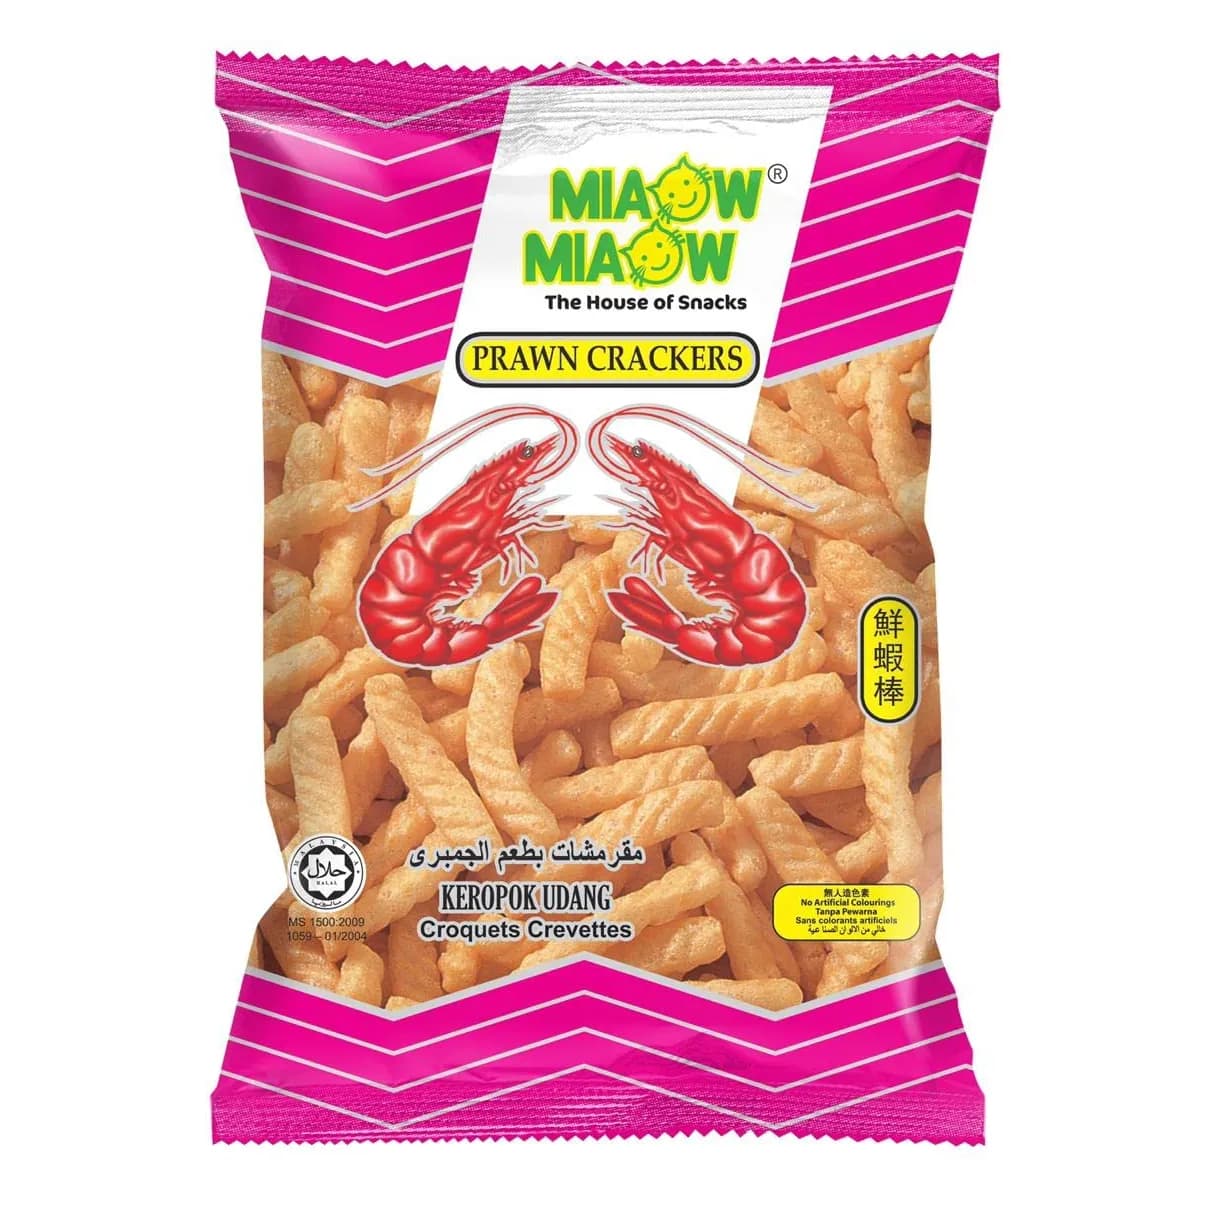 Miaow Miaow Prawn Crackers